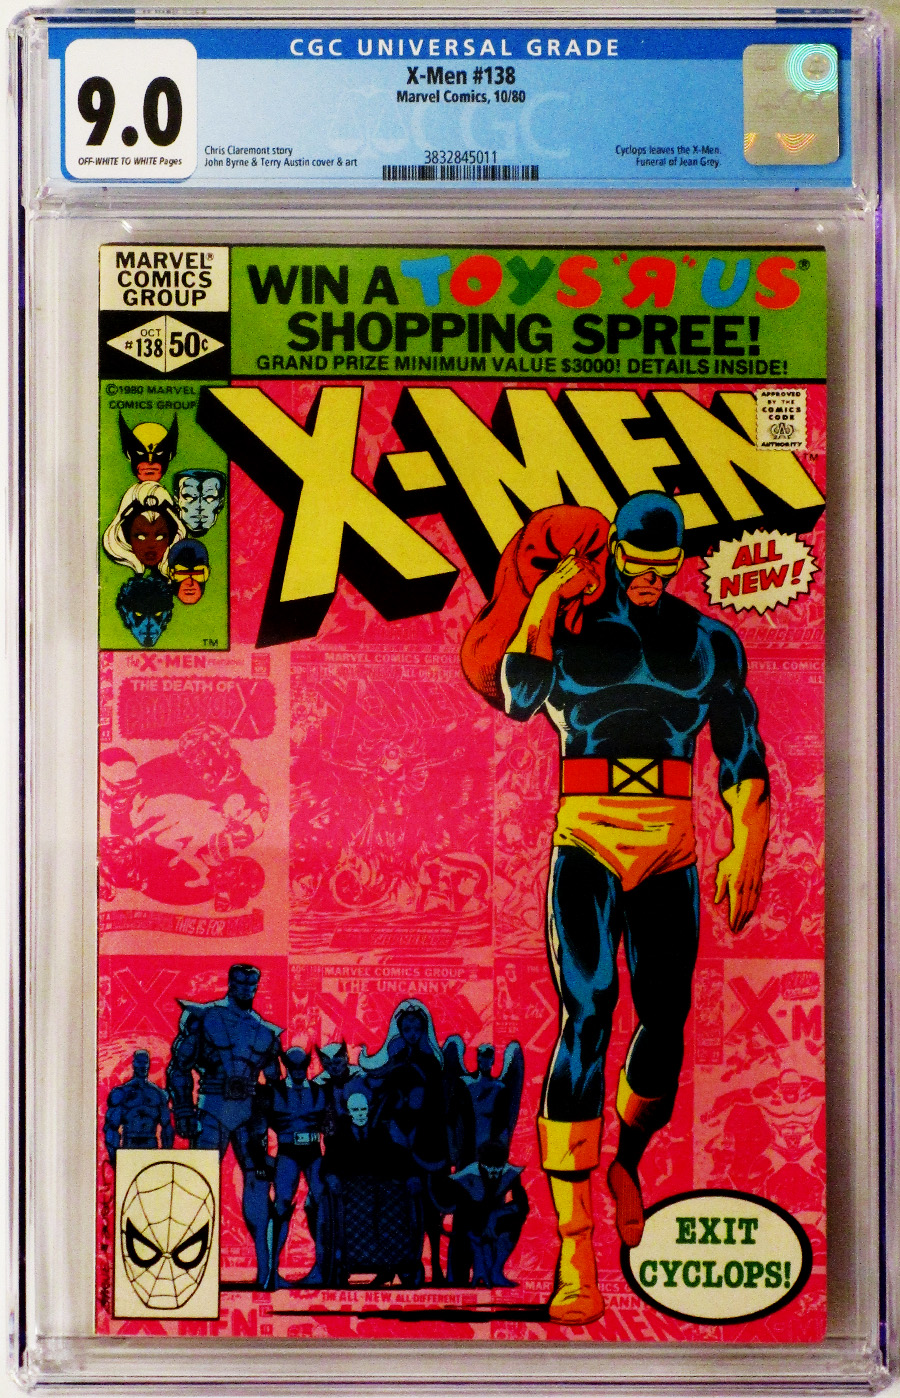 X-Men Vol 1 #138 Cover D CGC 9.0